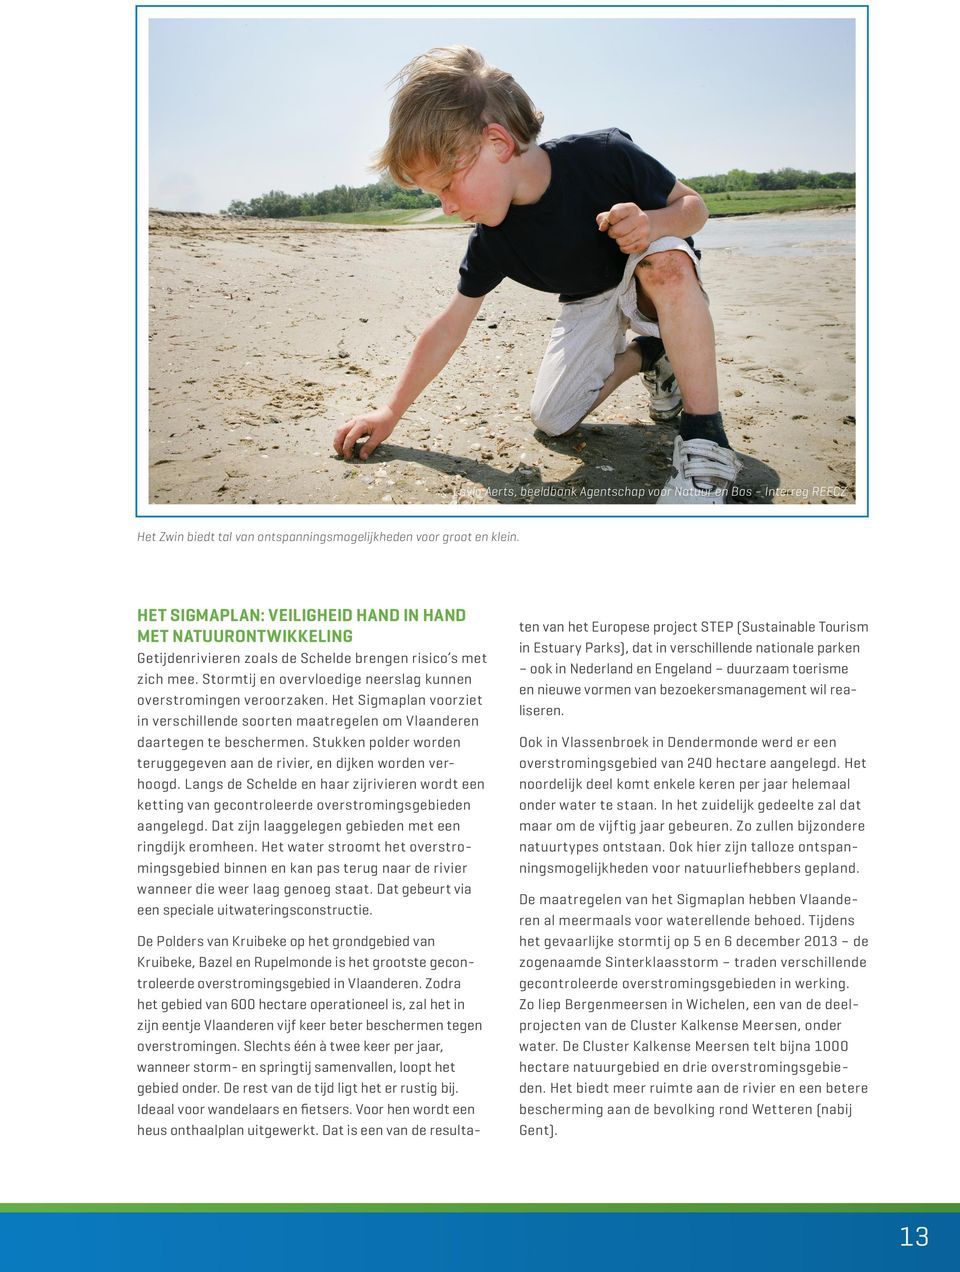 Het Sigmaplan voorziet in verschillende soorten maatregelen om Vlaanderen daartegen te beschermen. Stukken polder worden teruggegeven aan de rivier, en dijken worden verhoogd.